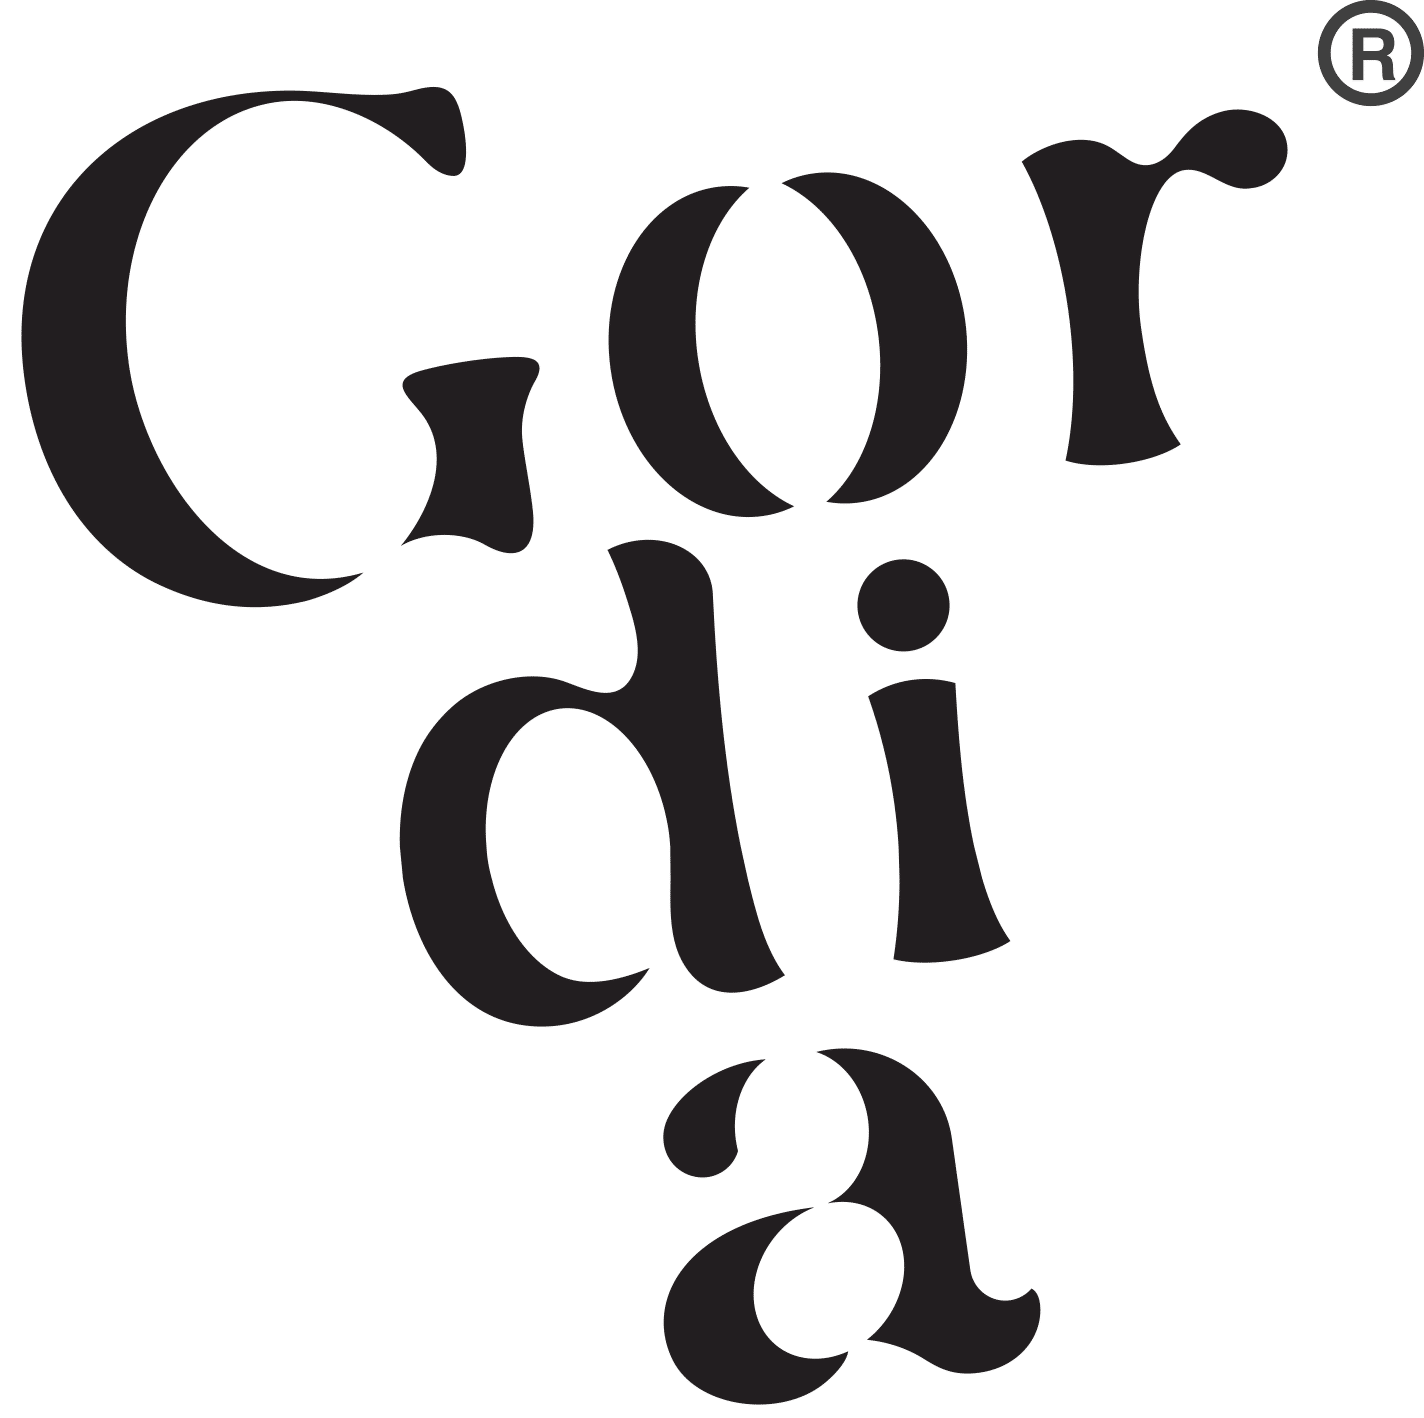 Gordia